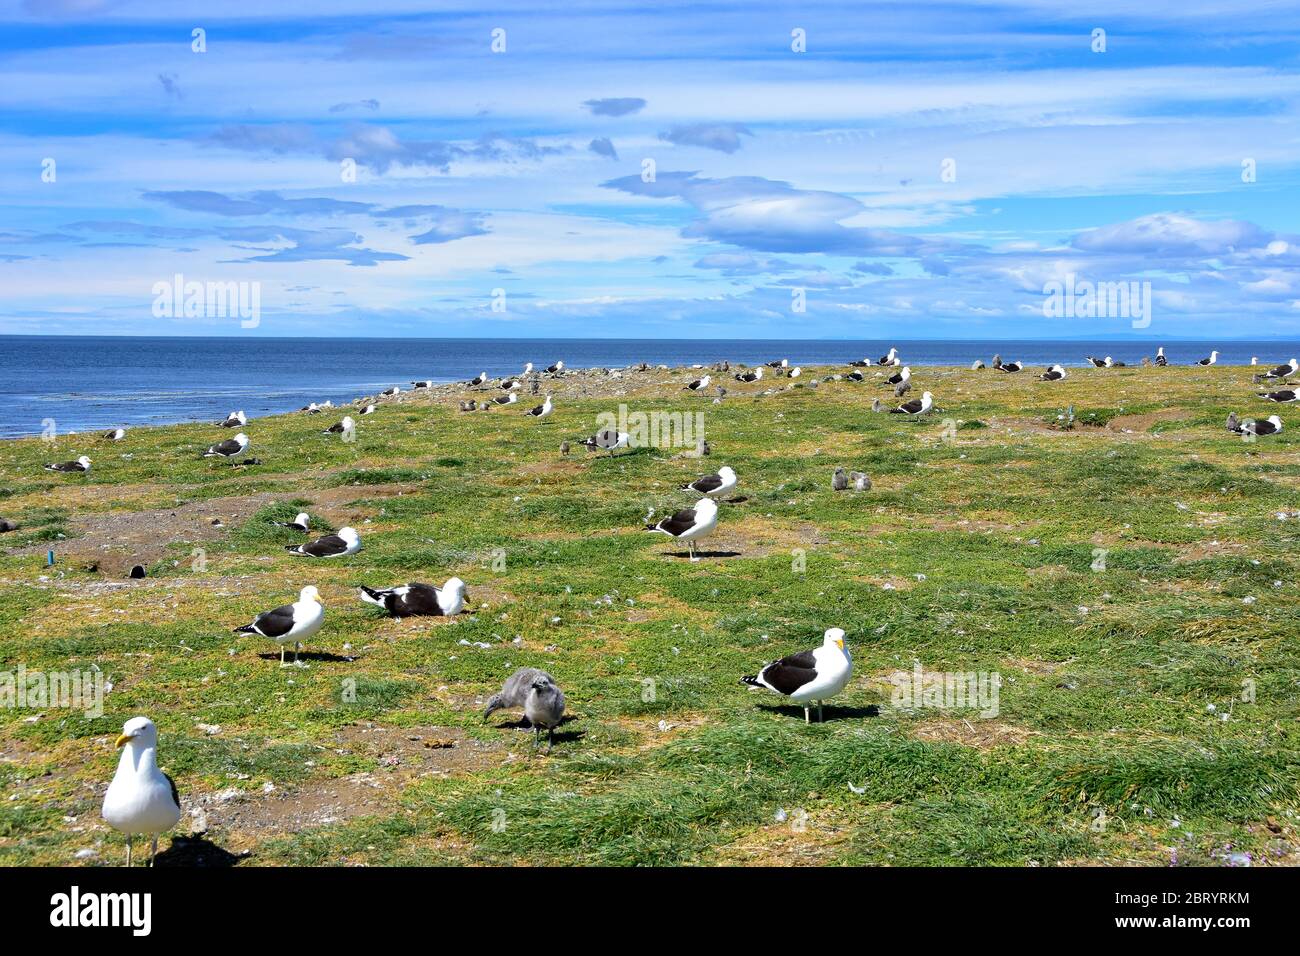 Adultos Kelp Gulls y pollitos en la colonia de la Isla Magdalena, Chile. Foto de stock